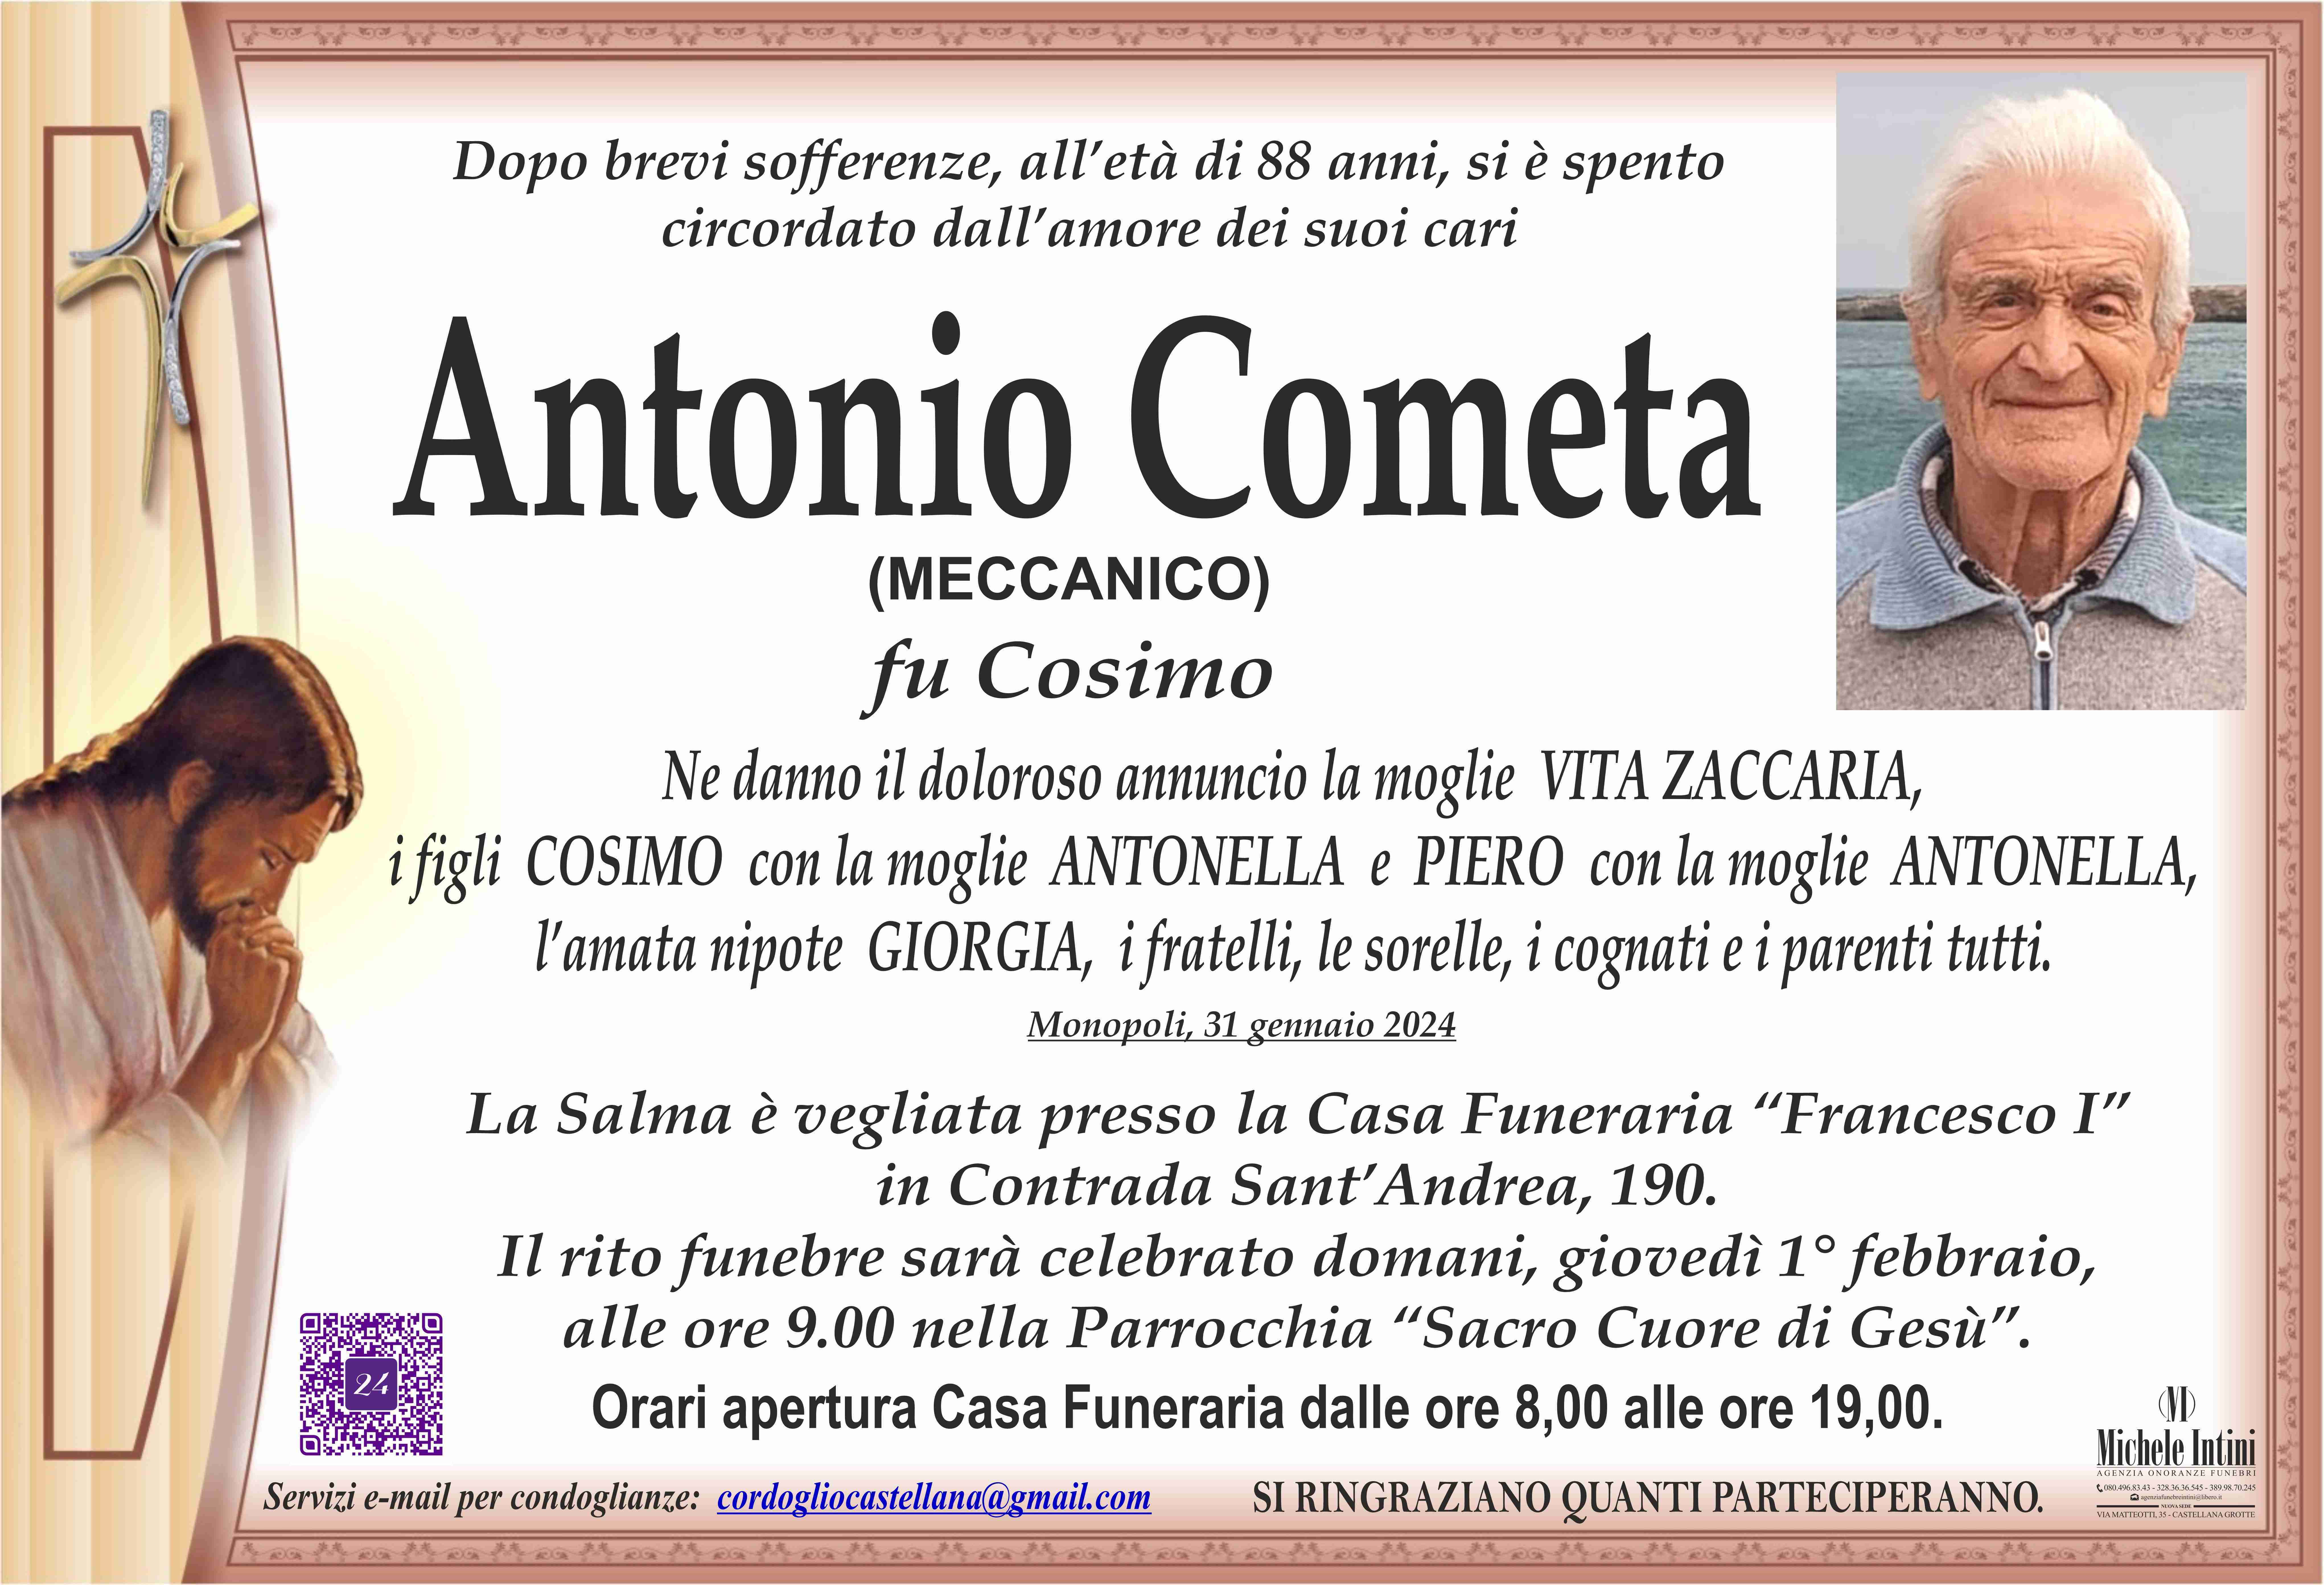 Antonio Cometa